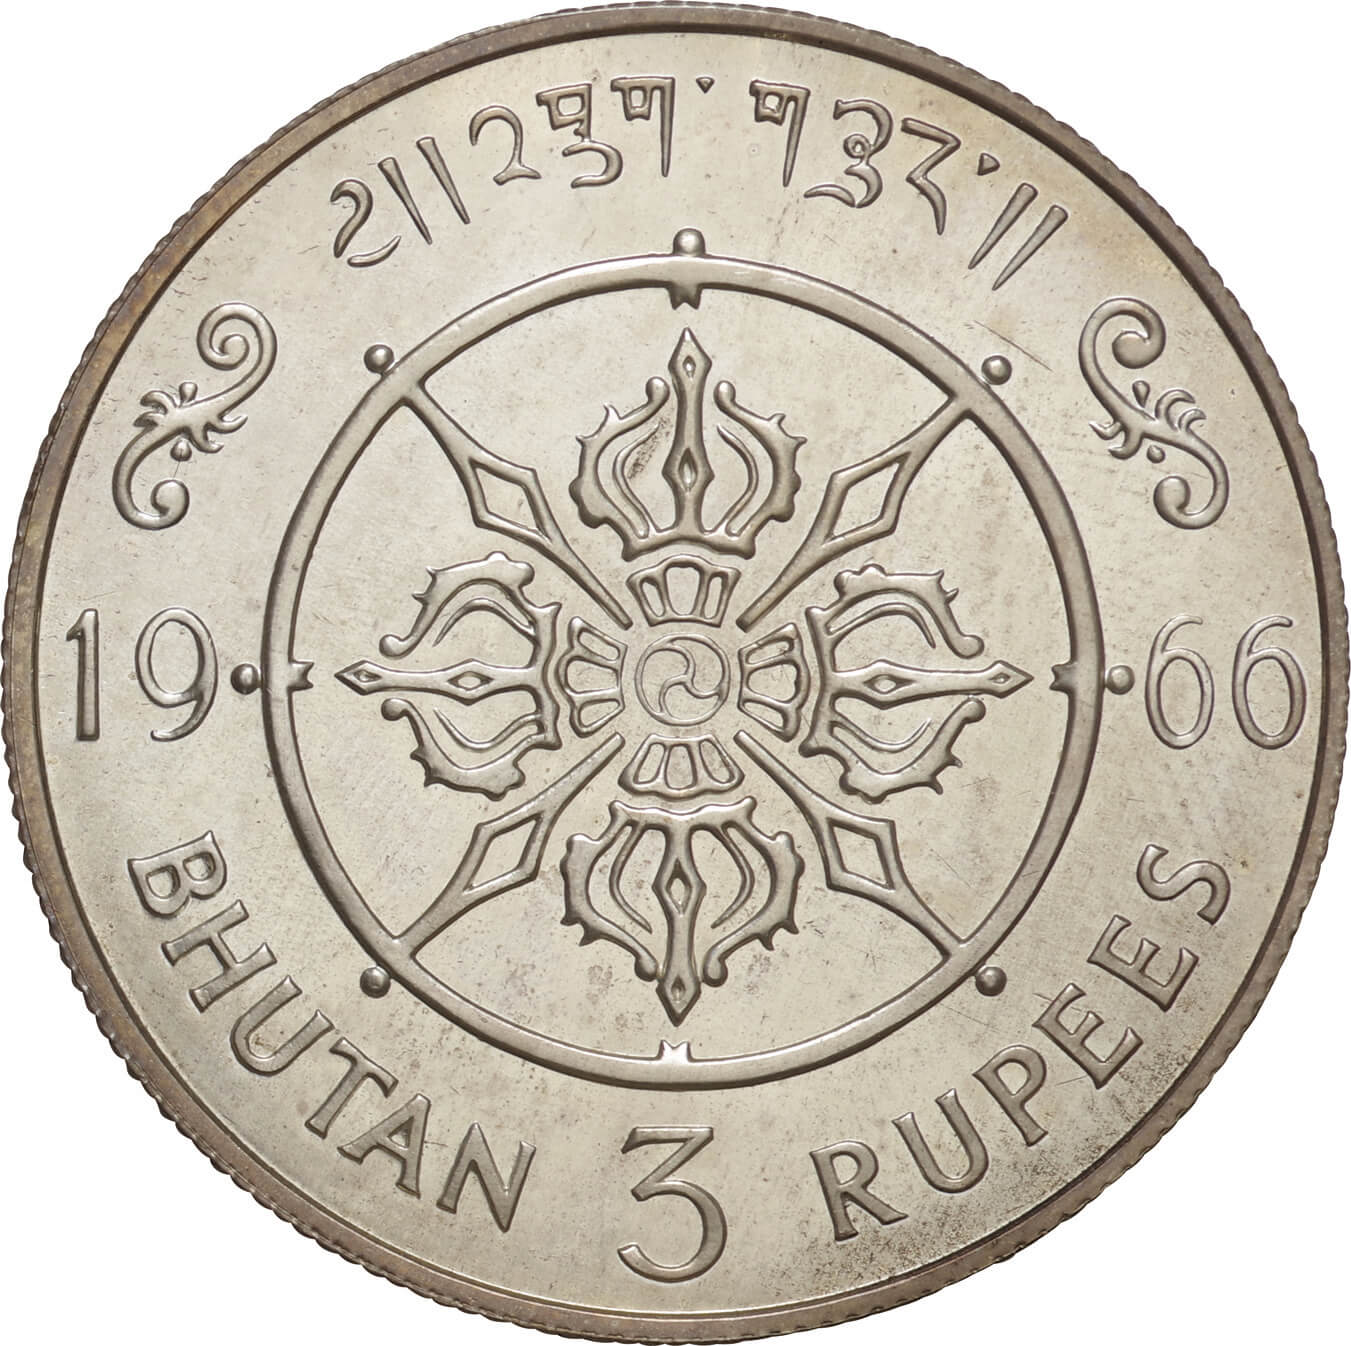 ブータン-Bhutan. 1966. Silver. 3ルピー(Rupee). プルーフ. Proof